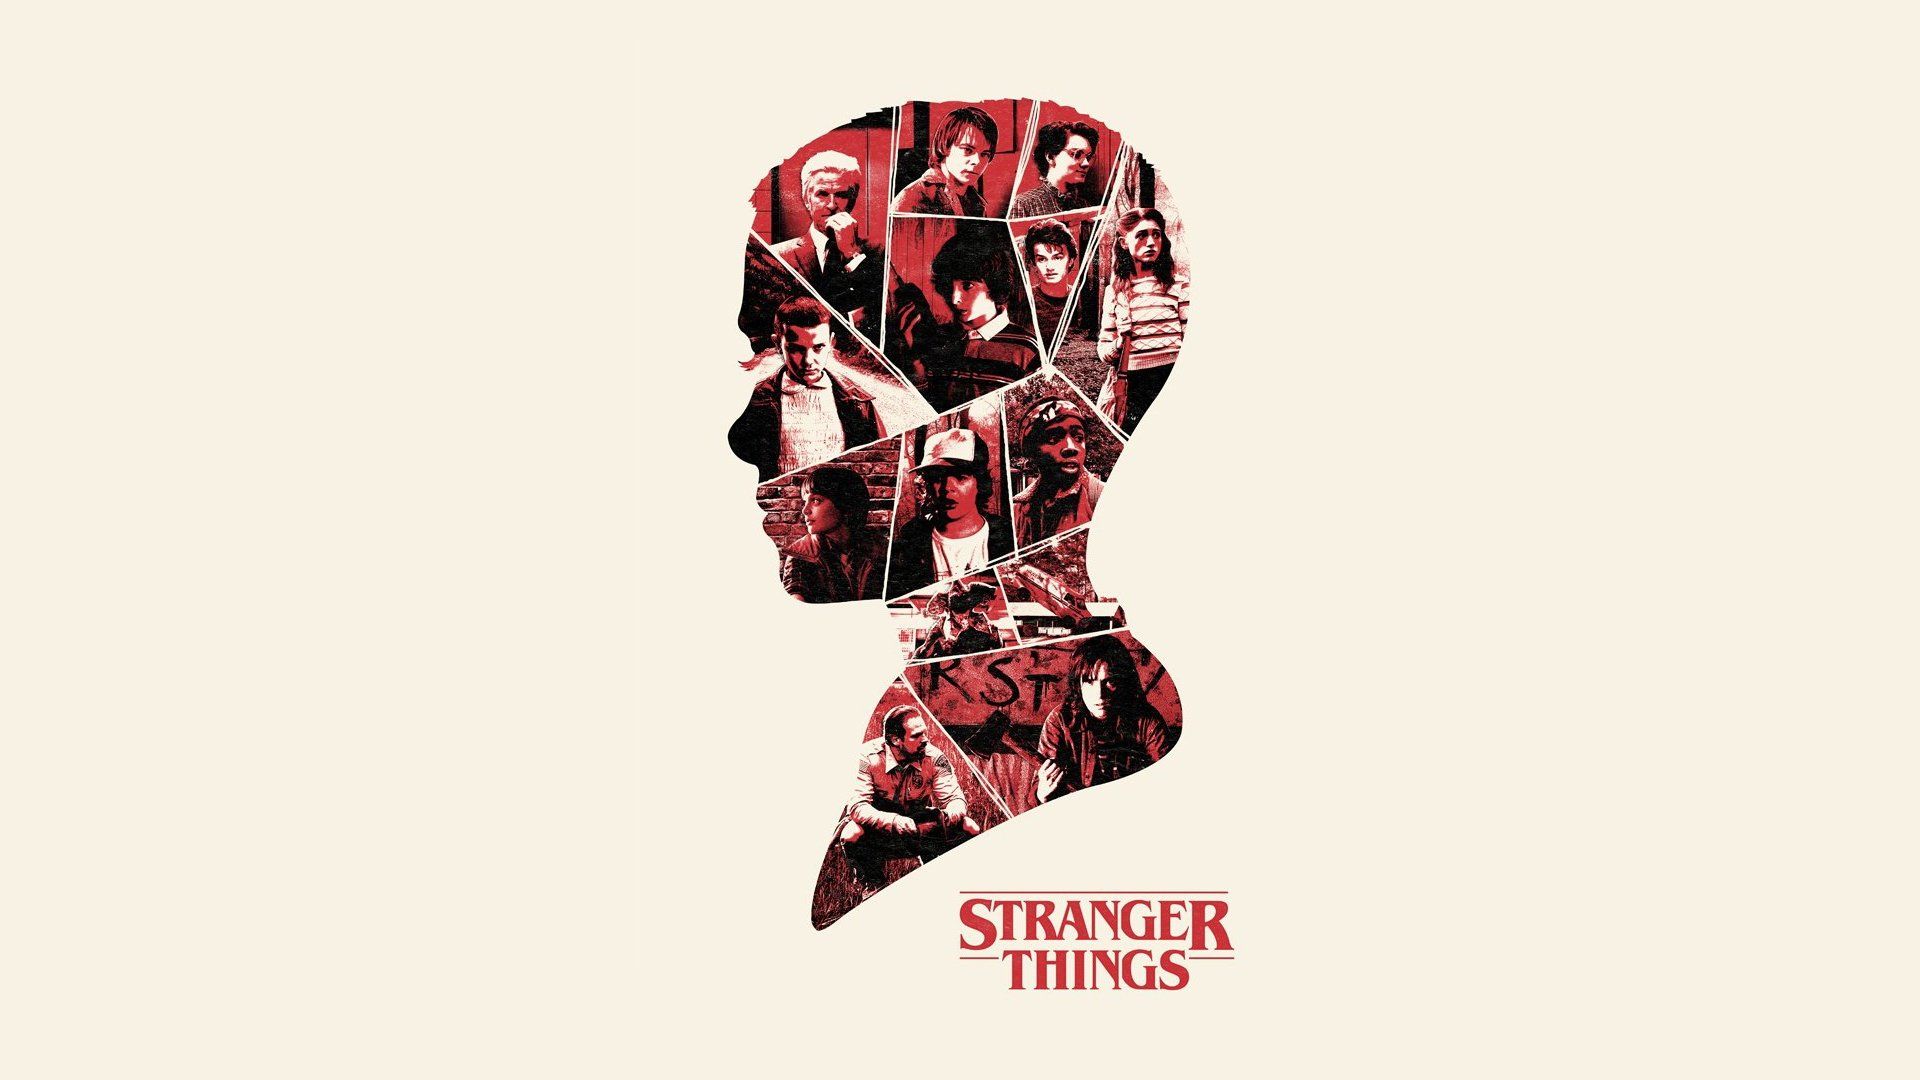 Stranger things poster, hd wallpaper - Stranger Things